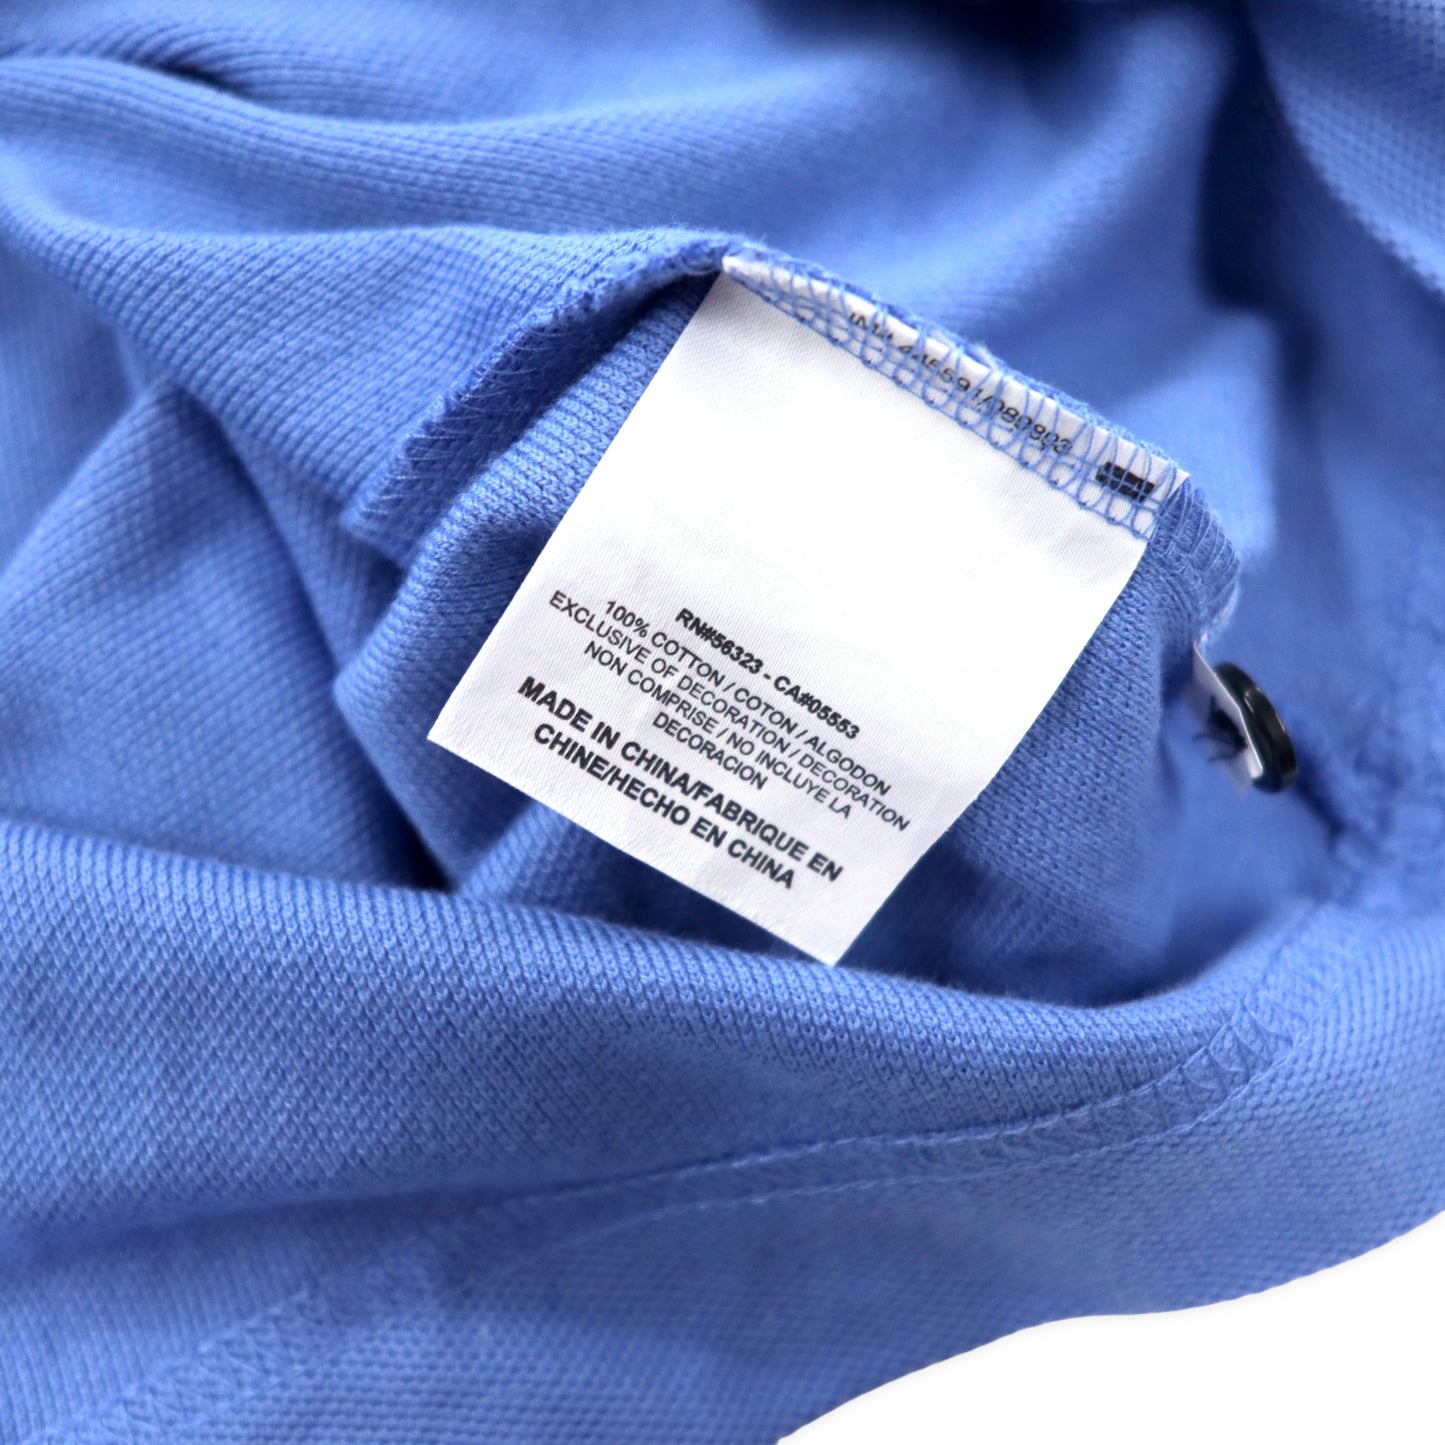 NIKE GOLF ポロシャツ XXL ブルー コットン ビッグサイズ 未使用品